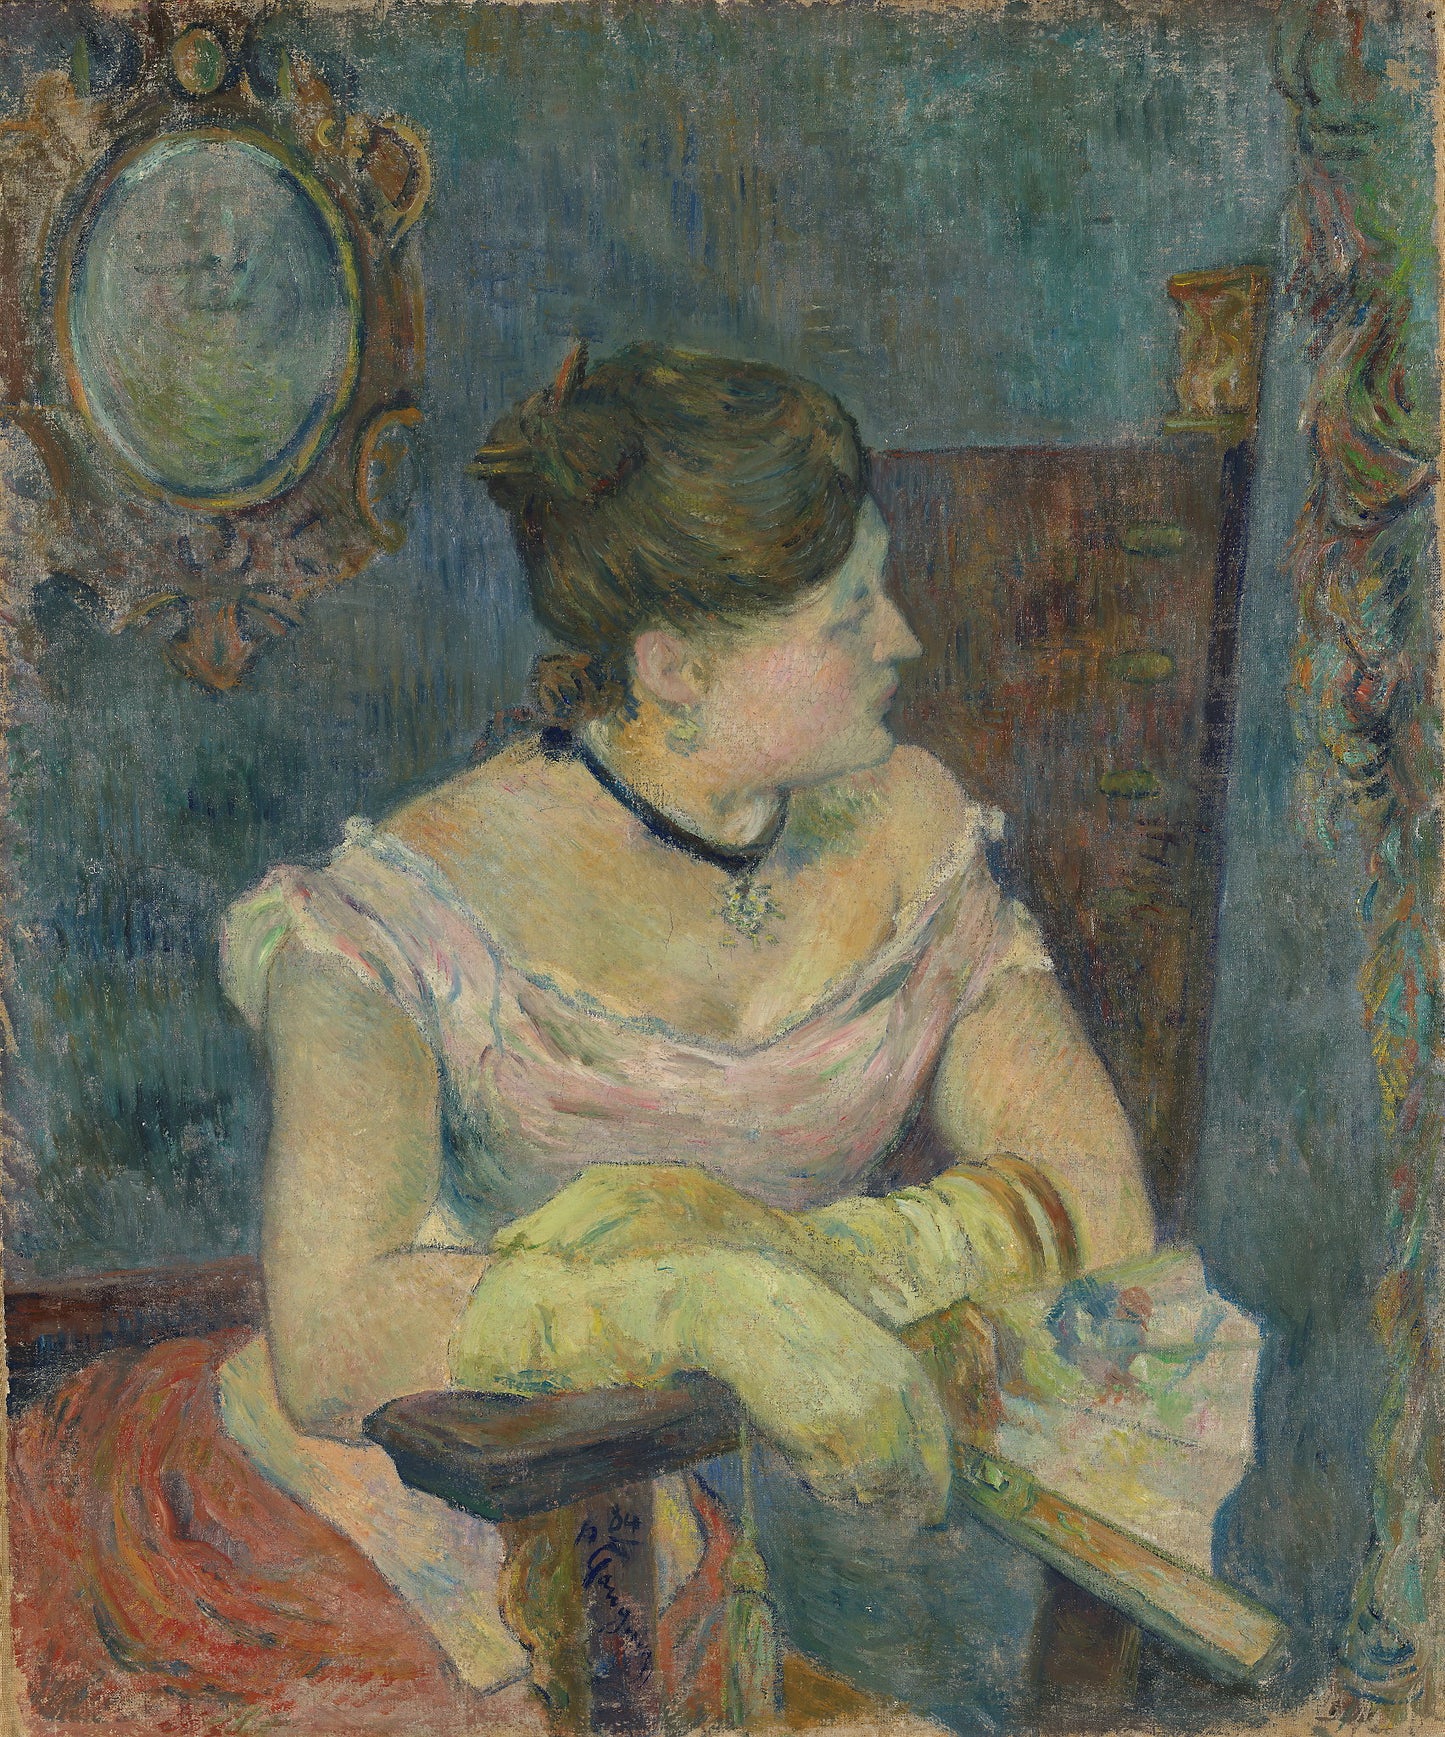 Lady's portrait